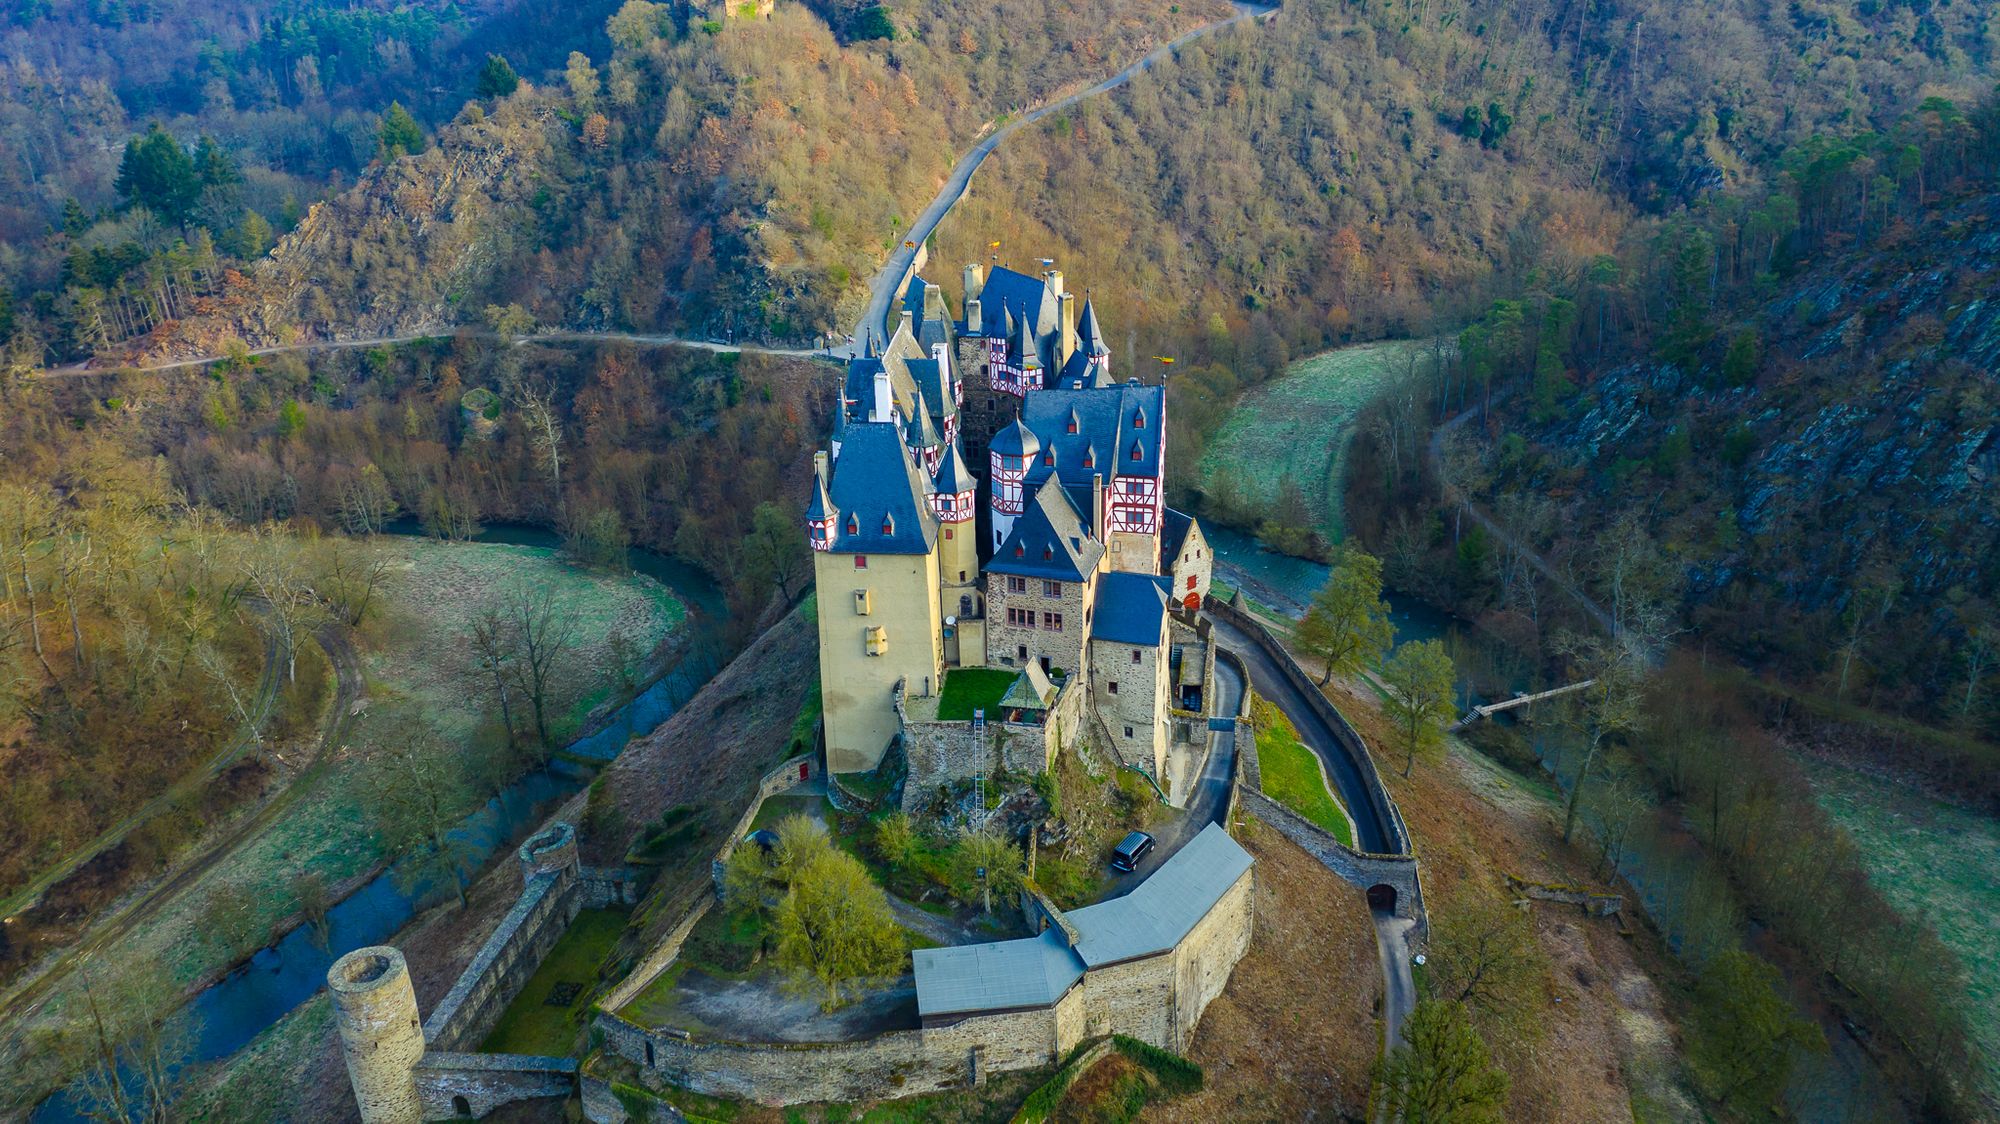 Burg Eltz - A Magical Castle